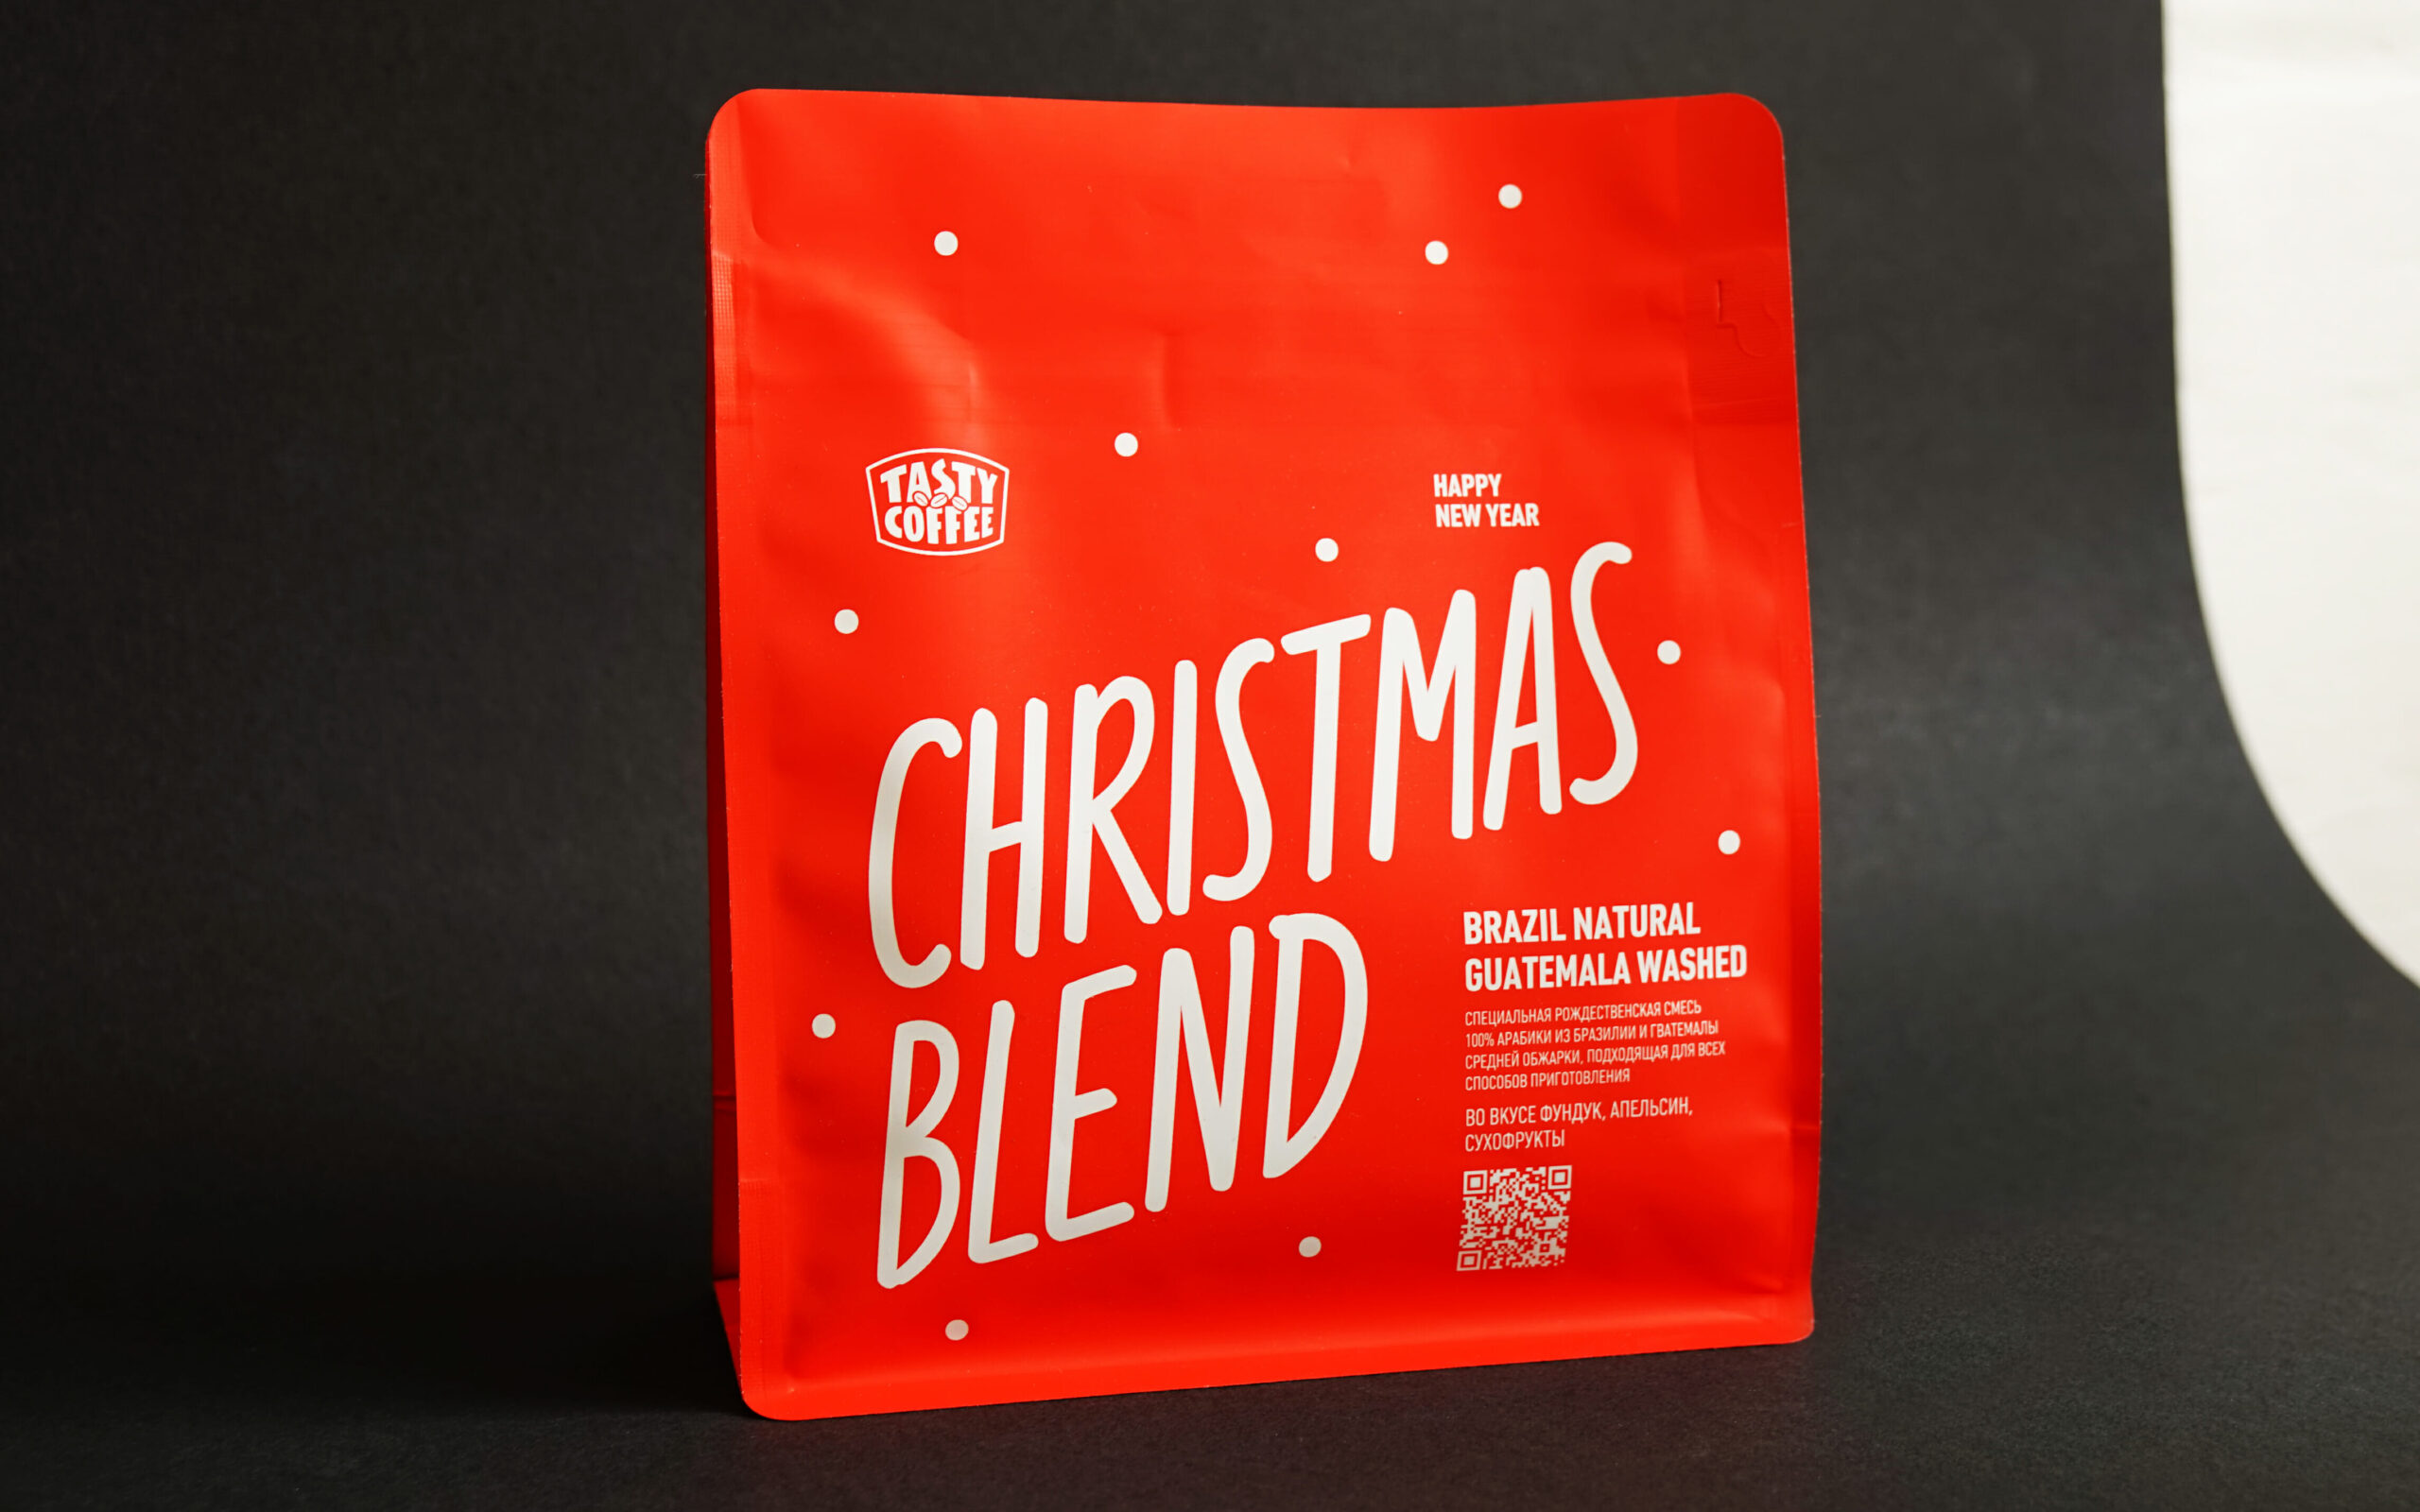 Дизайн упаковки Роджественской смеси от Tasty Coffee 2021